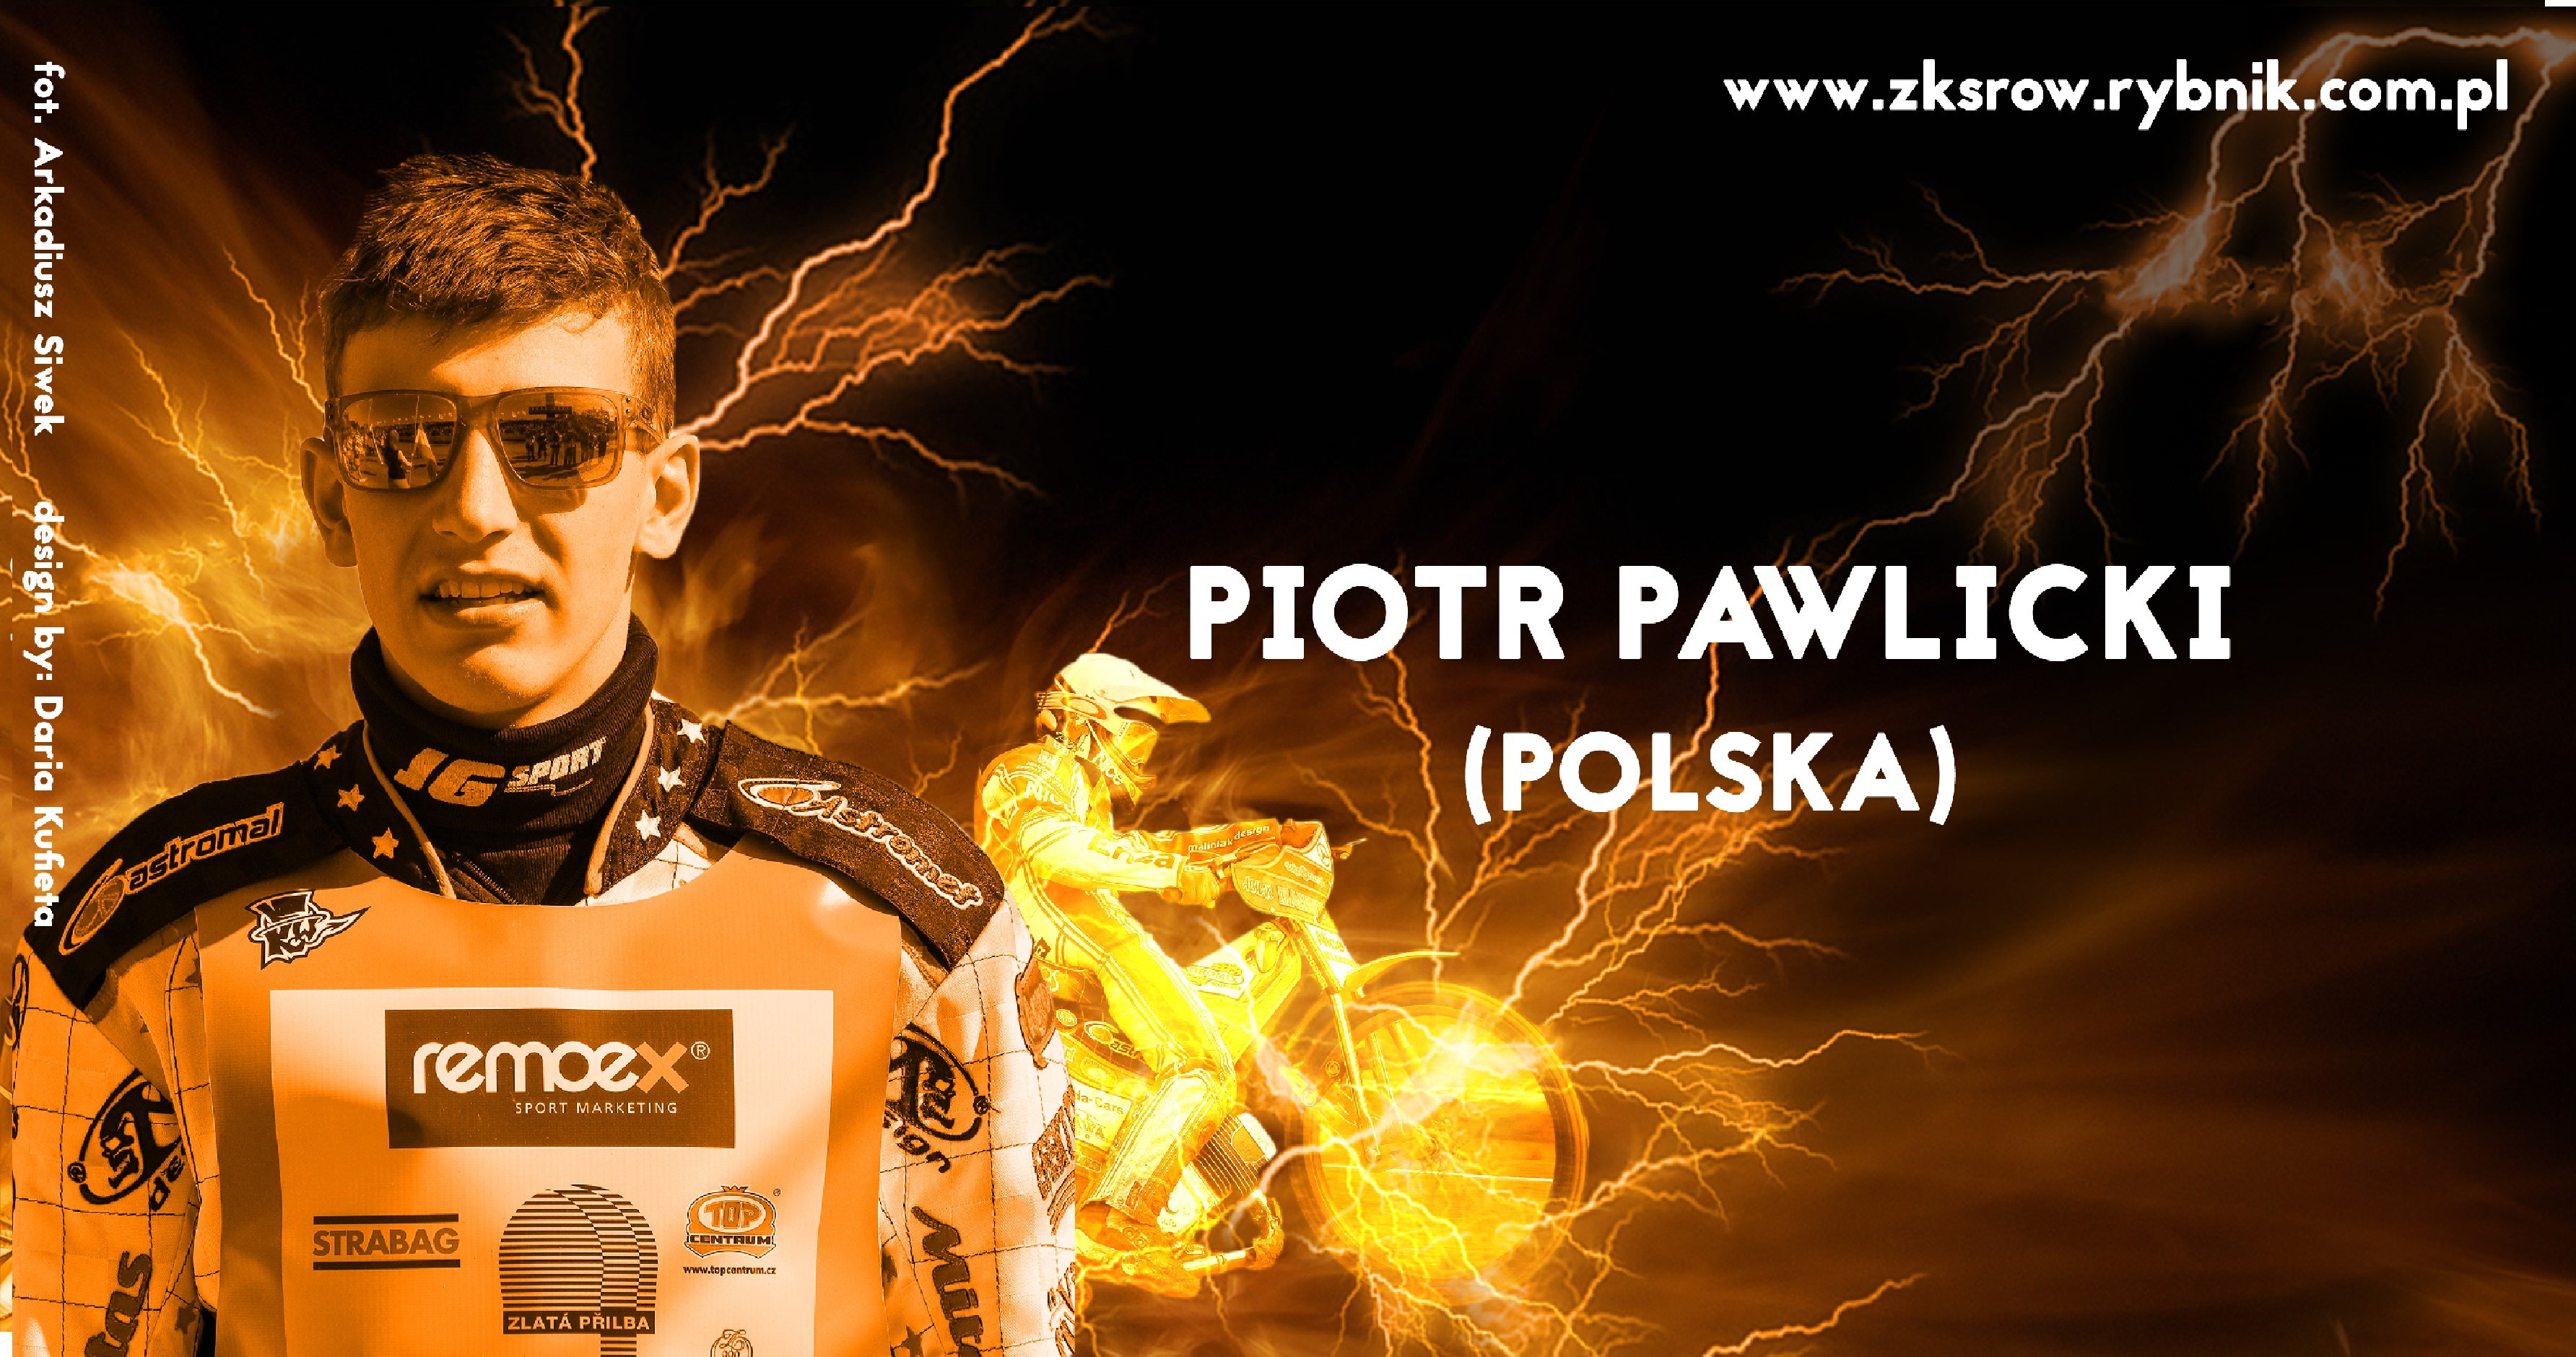 Piotr Pawlicki